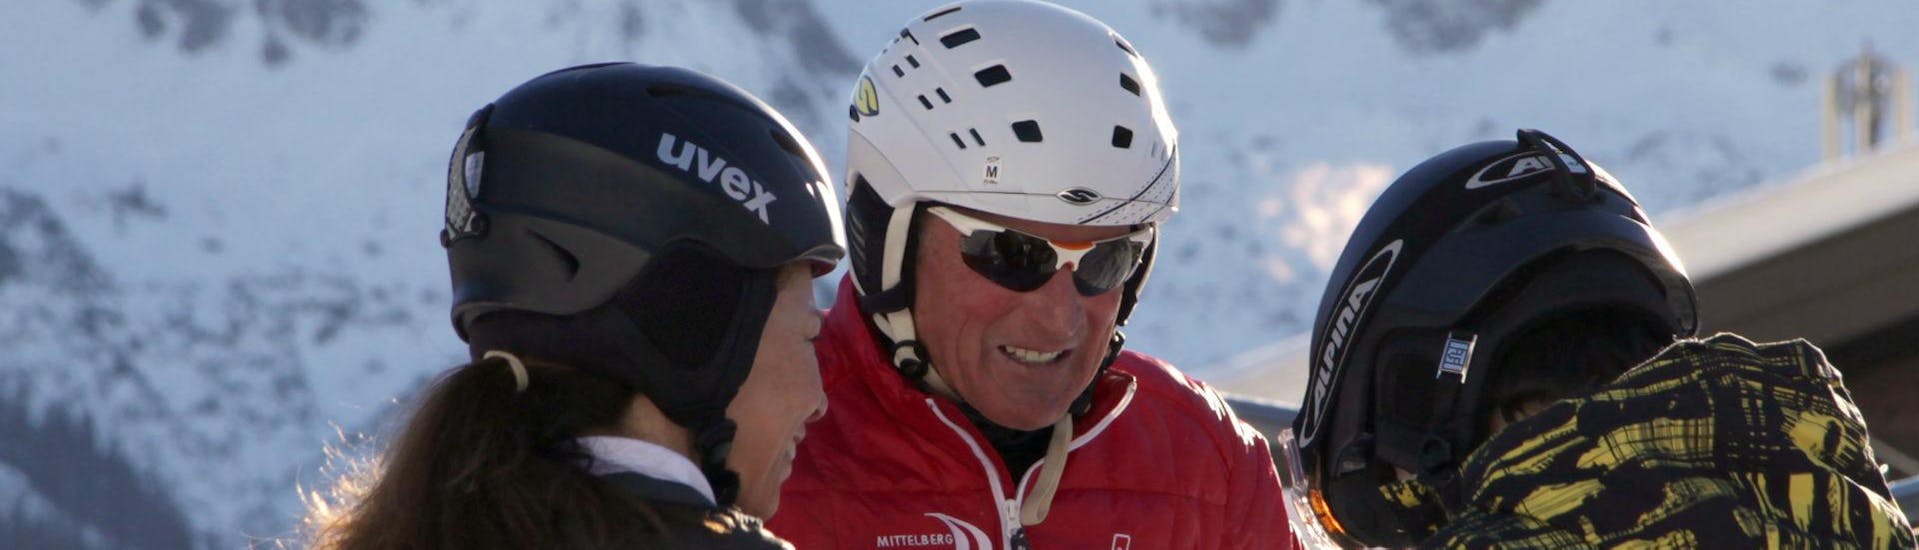 Een instructeur van de Skischool Mittelberg helpt snowboarders tijdens privé snowboardlessen voor kinderen en volwassenen van alle niveaus.